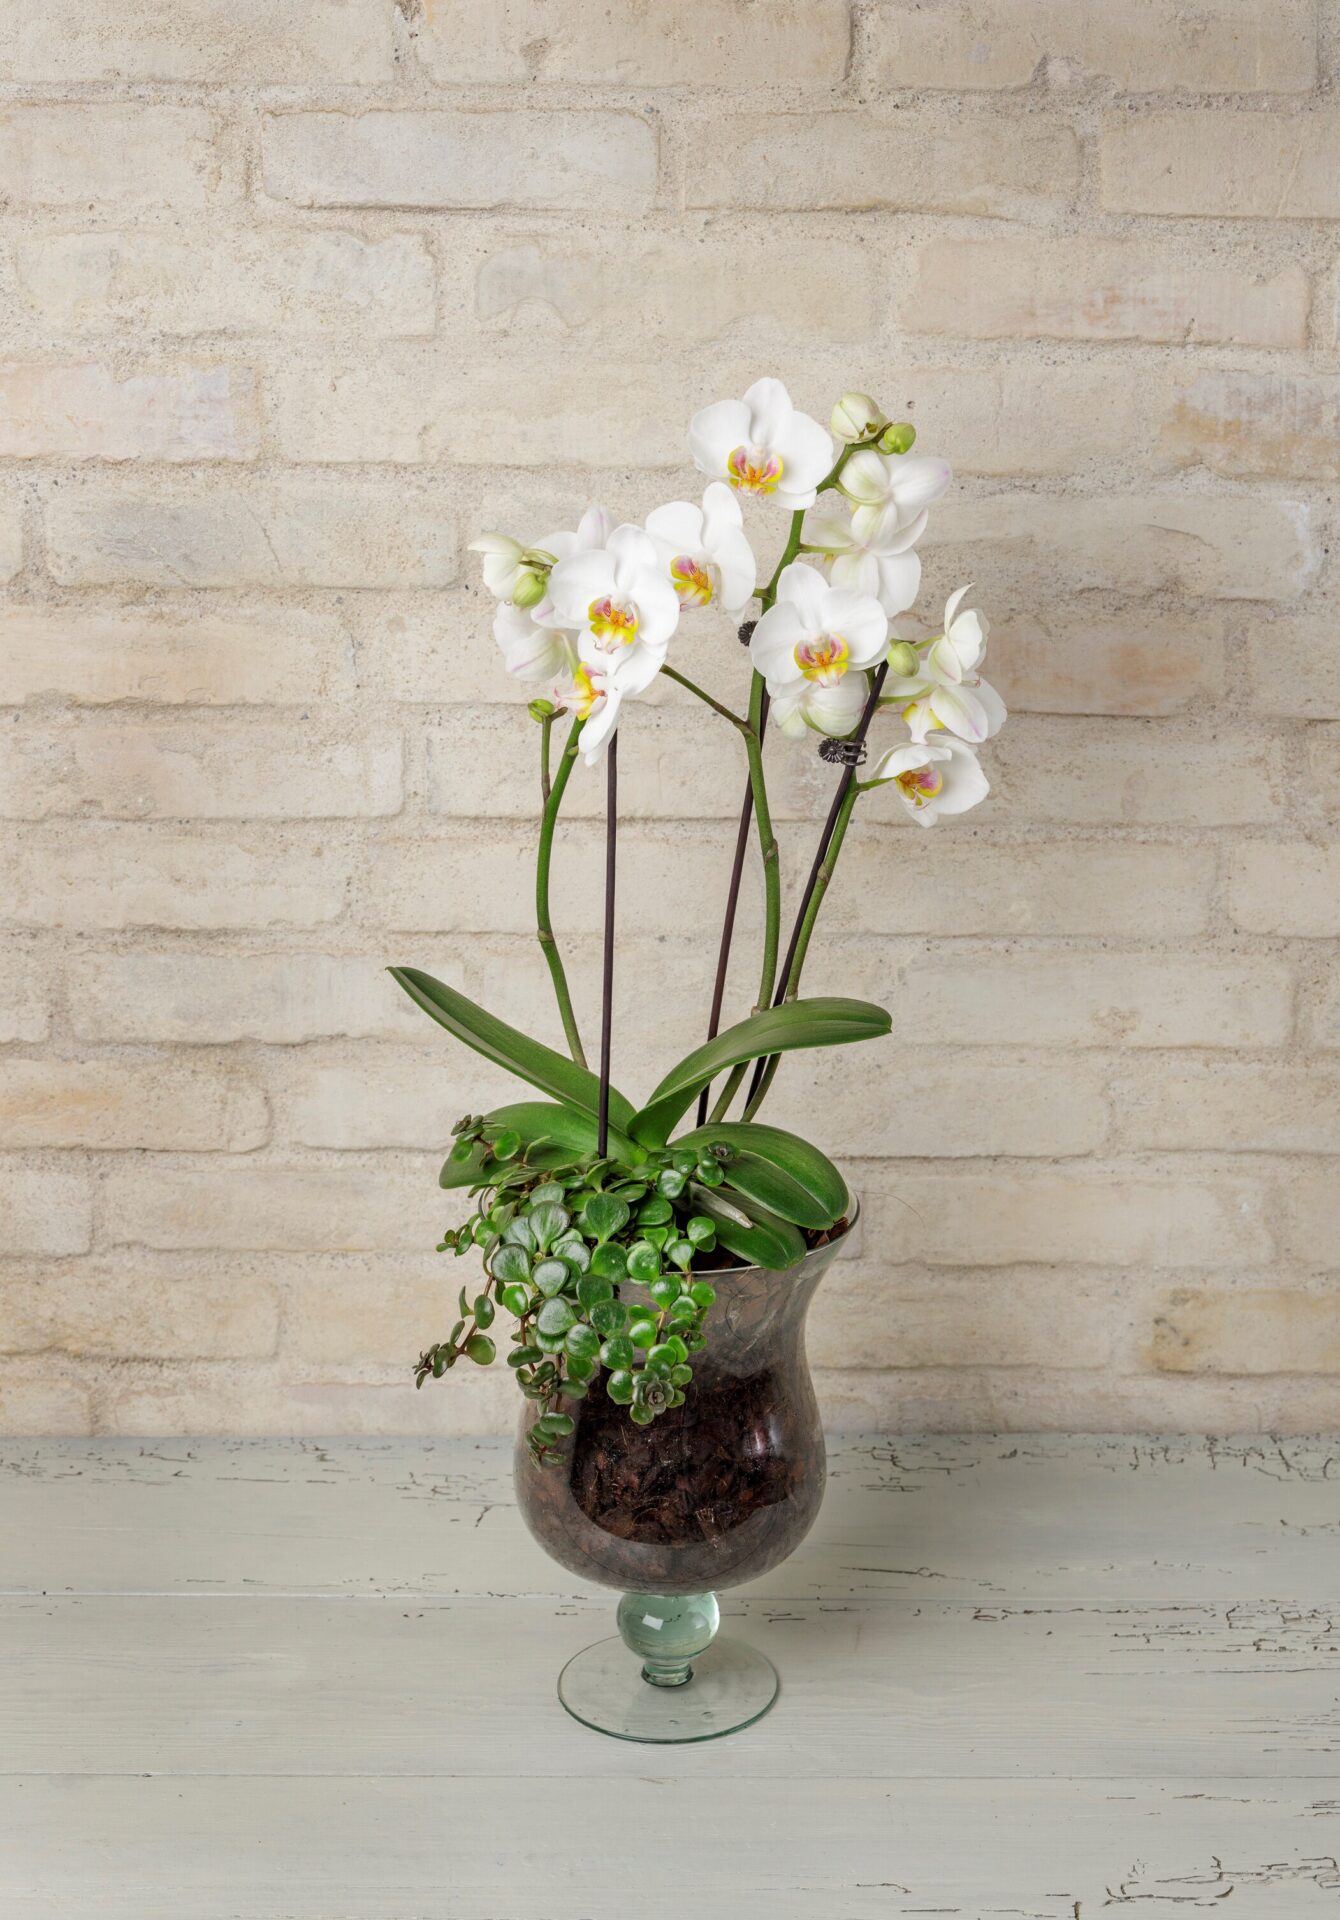 Orkide dekoration i høj glaspokal